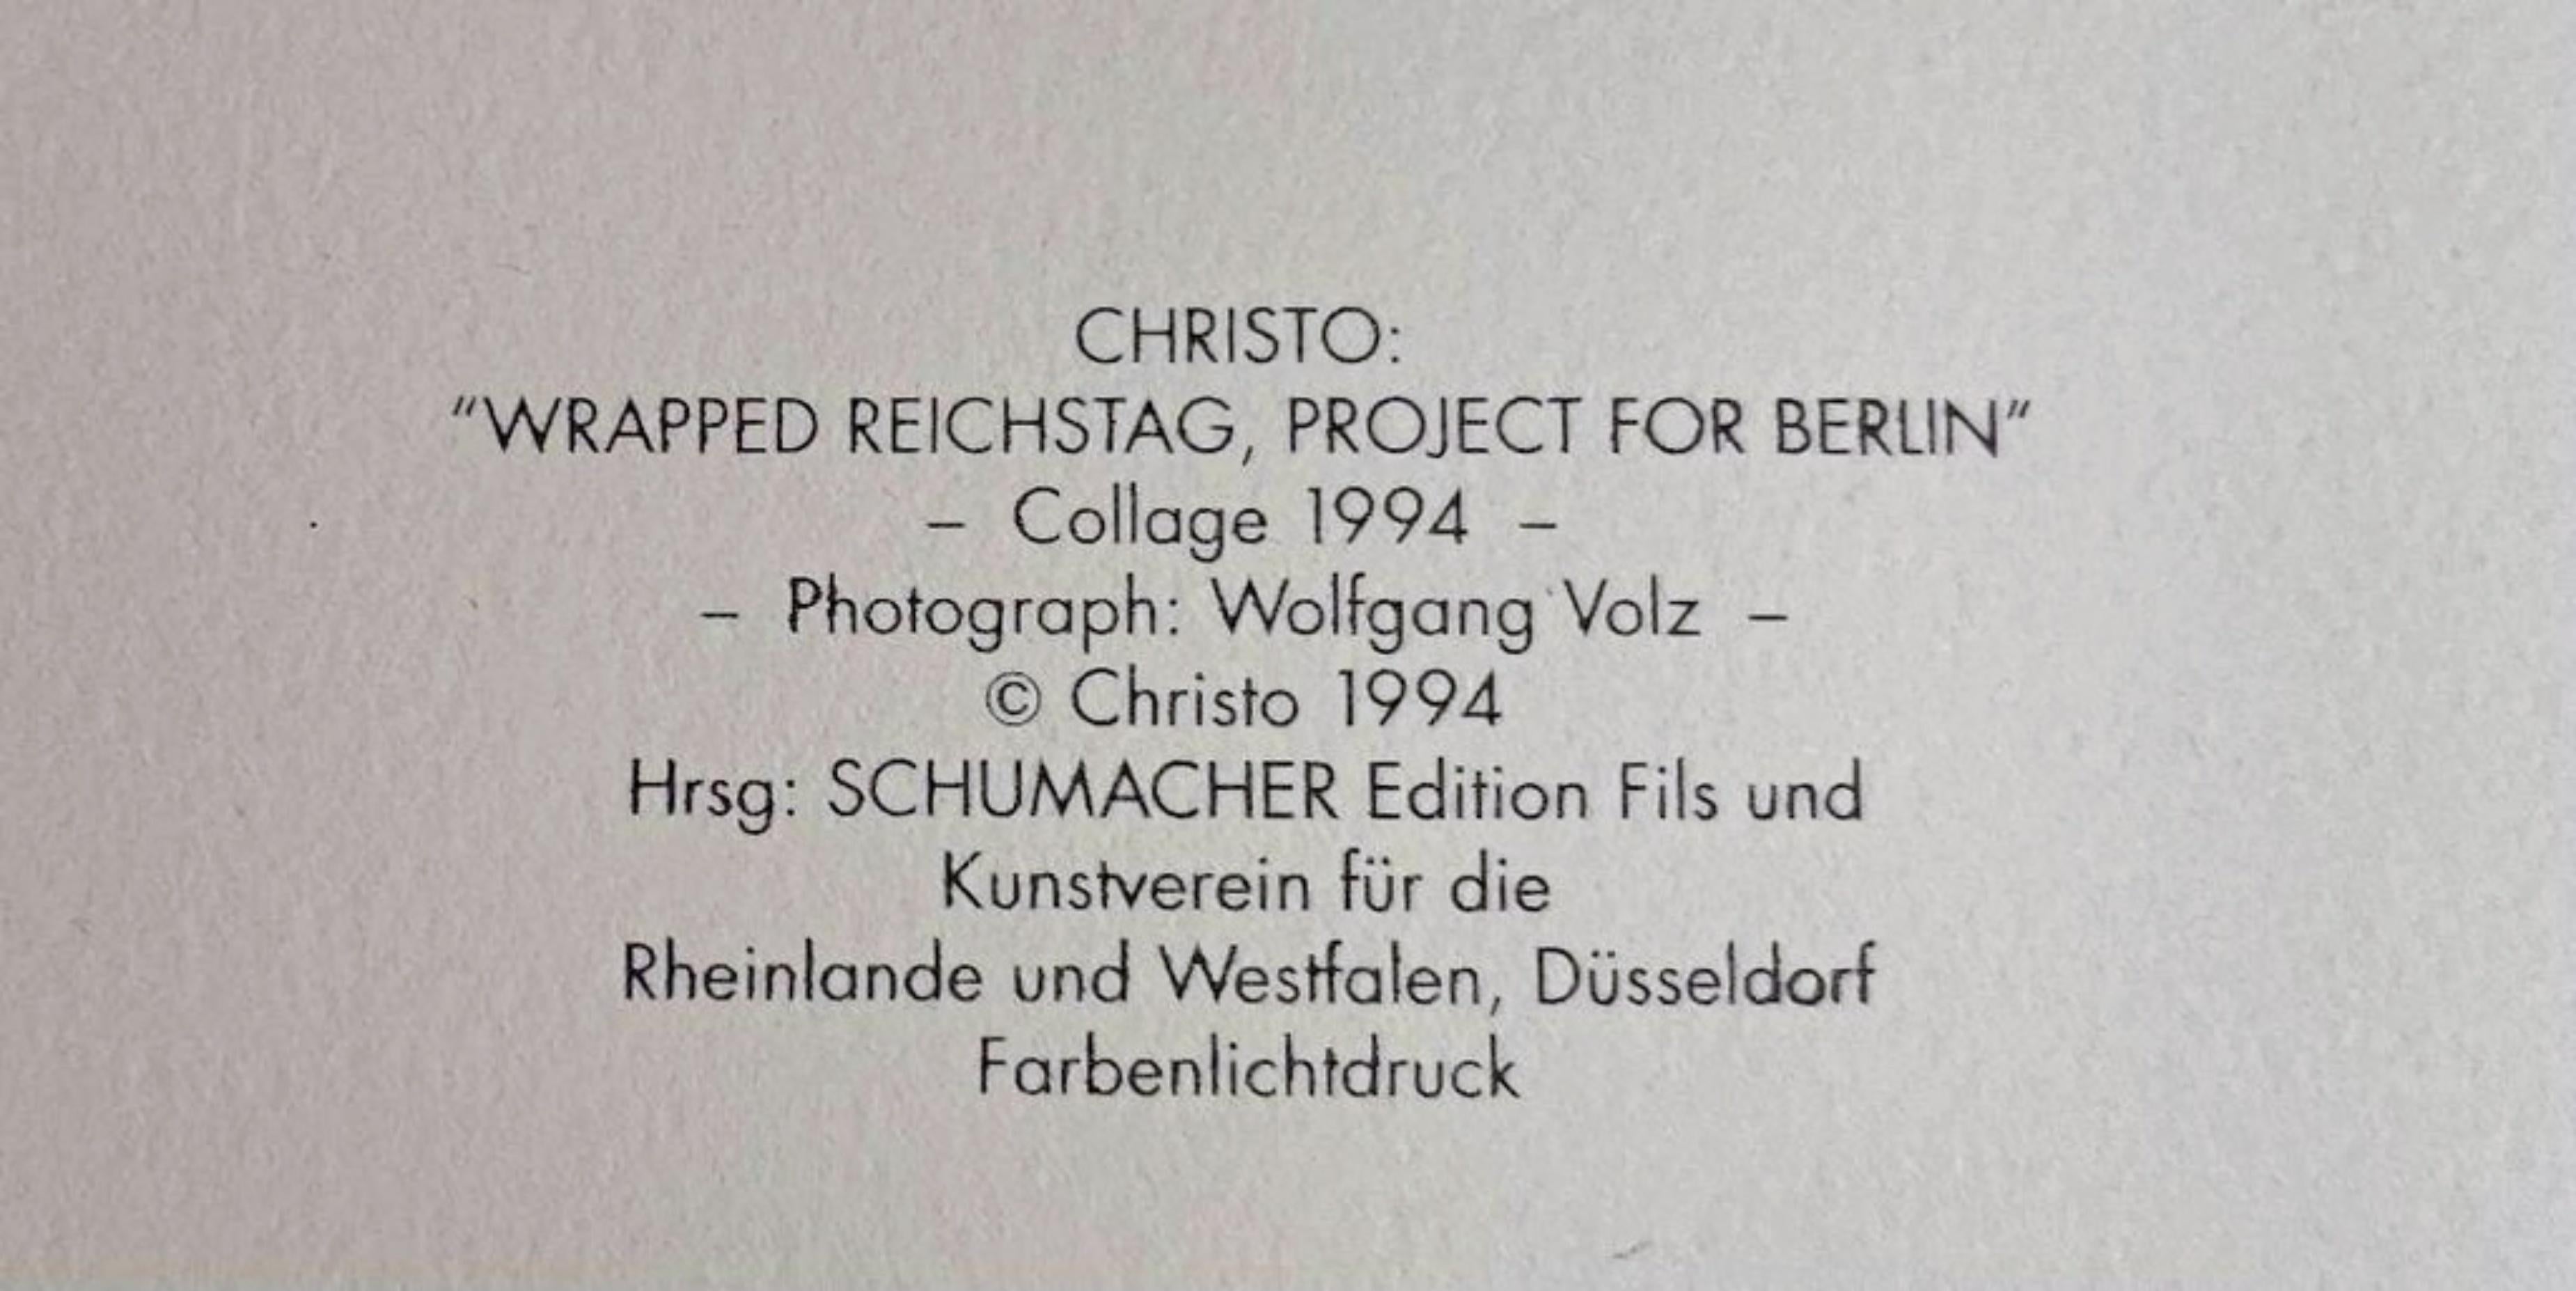 Christo
Reichstag enveloppé : Projet pour Berlin, 1994
Collage sur lithographie offset avec papier thermique argenté en relief utilisé pour emballer le Reichstag, sur papier fin velincarton.
15 3/4 × 11 1/2 pouces
Édition de 100 exemplaires (non